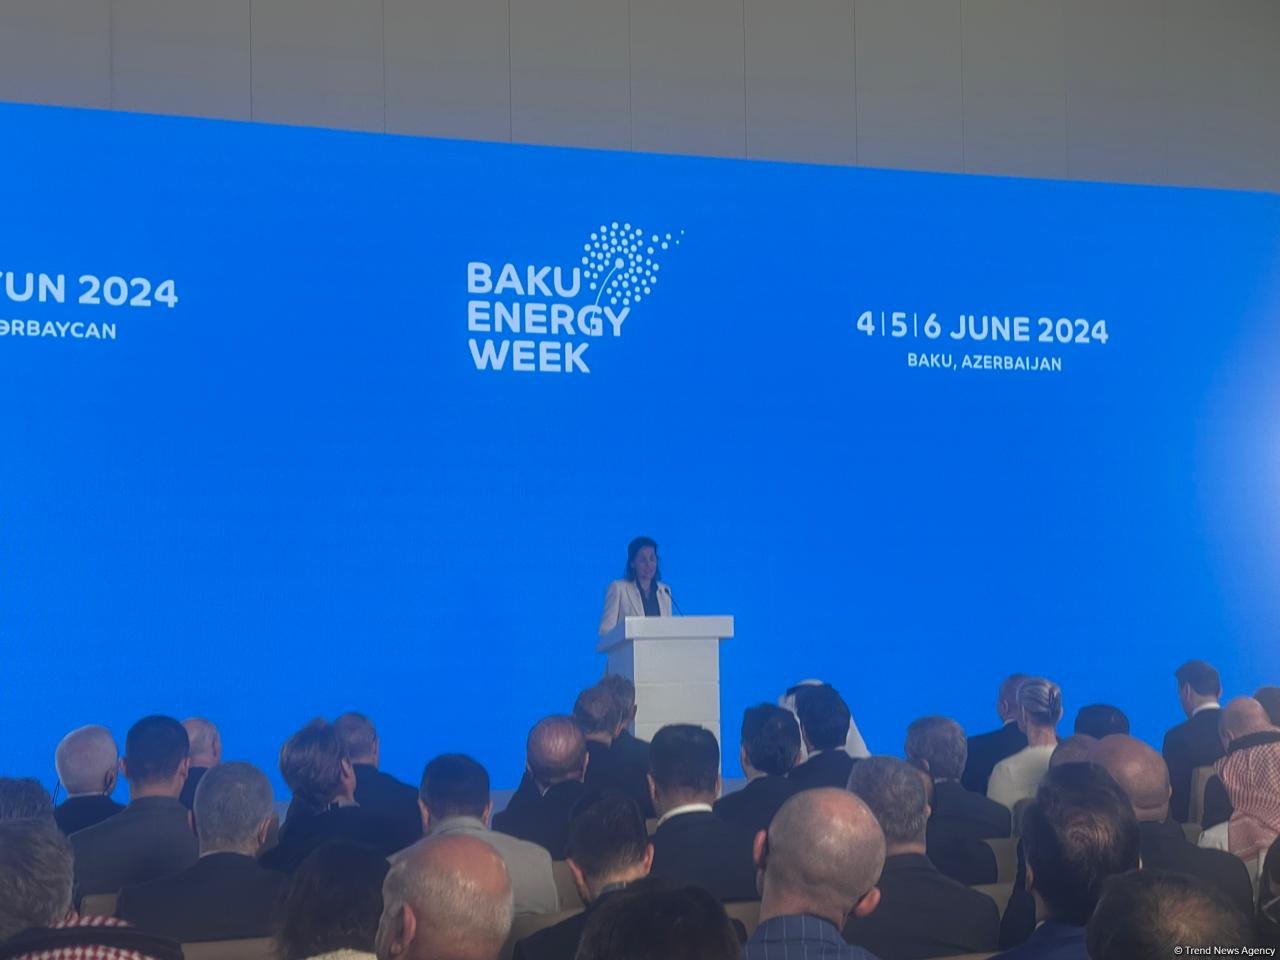 Европа придает большое значение сотрудничеству с Азербайджаном в сфере энергетики - Кристина Лобилло Борреро